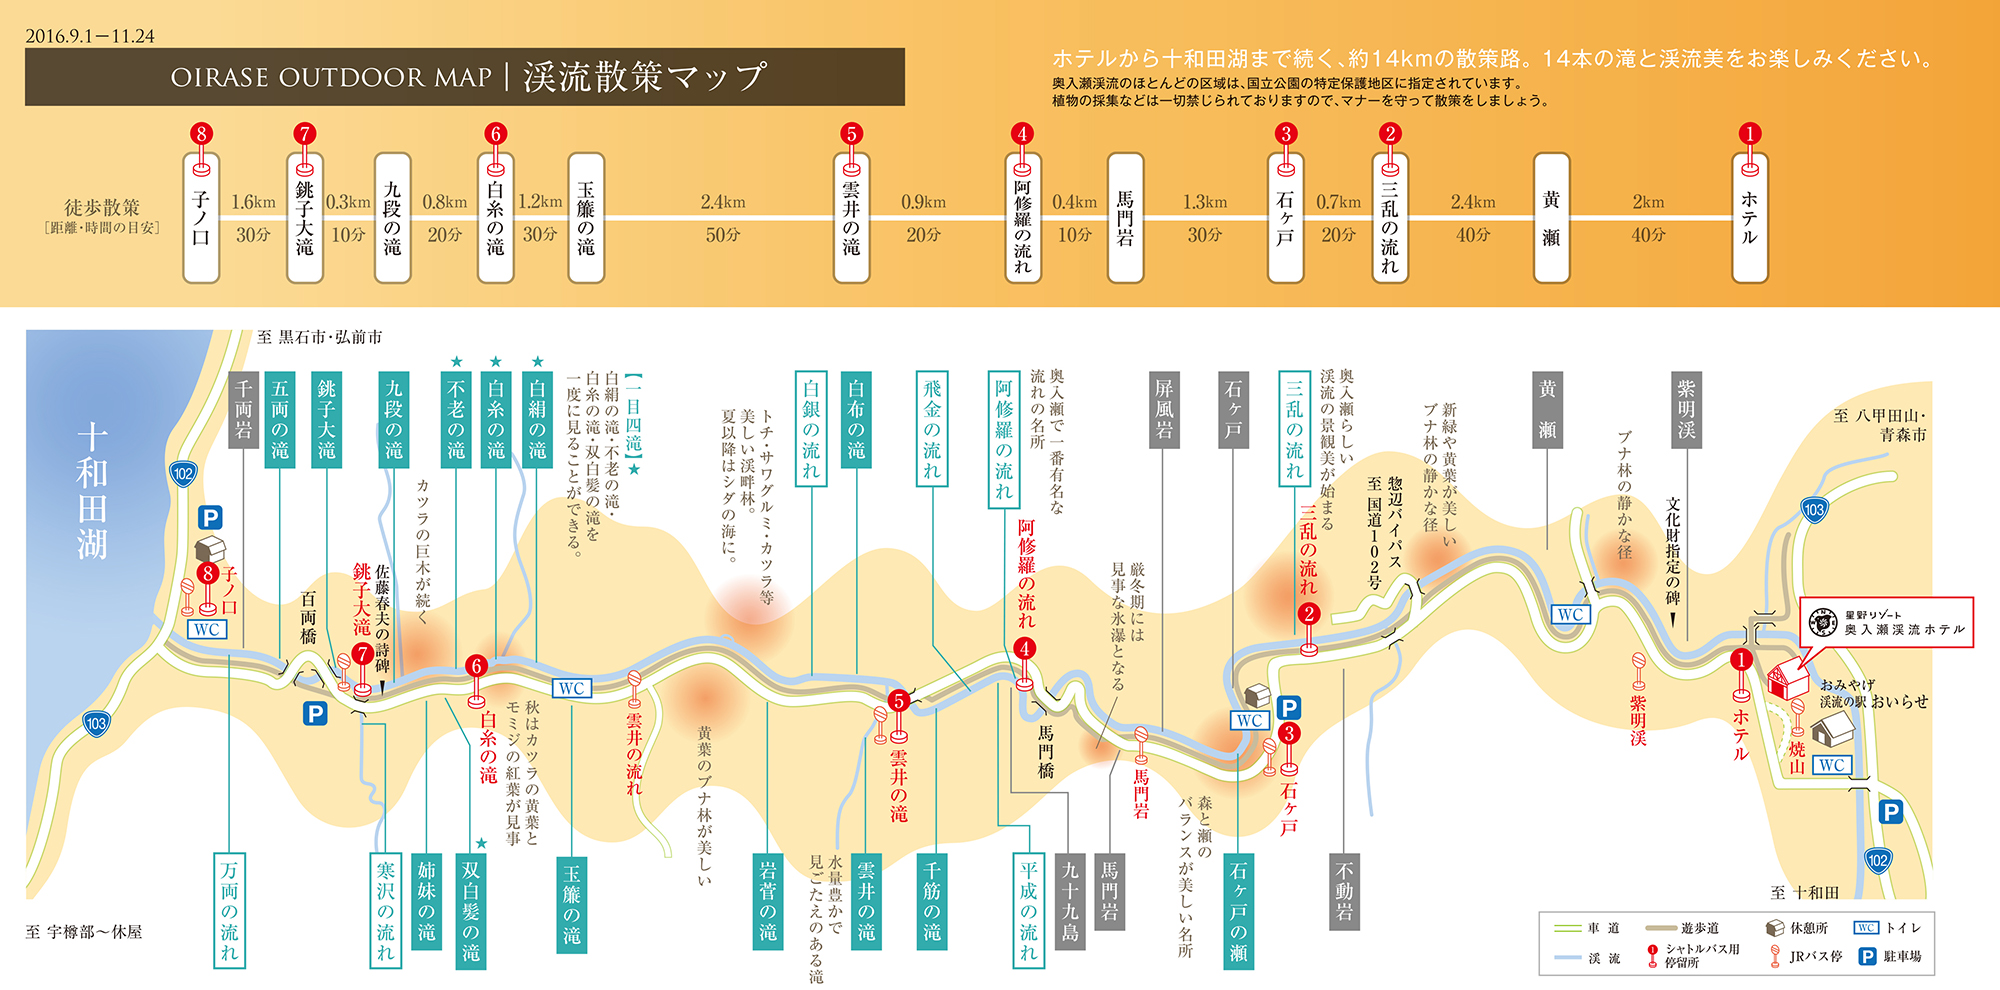 星野リゾートの奥入瀬散策マップ